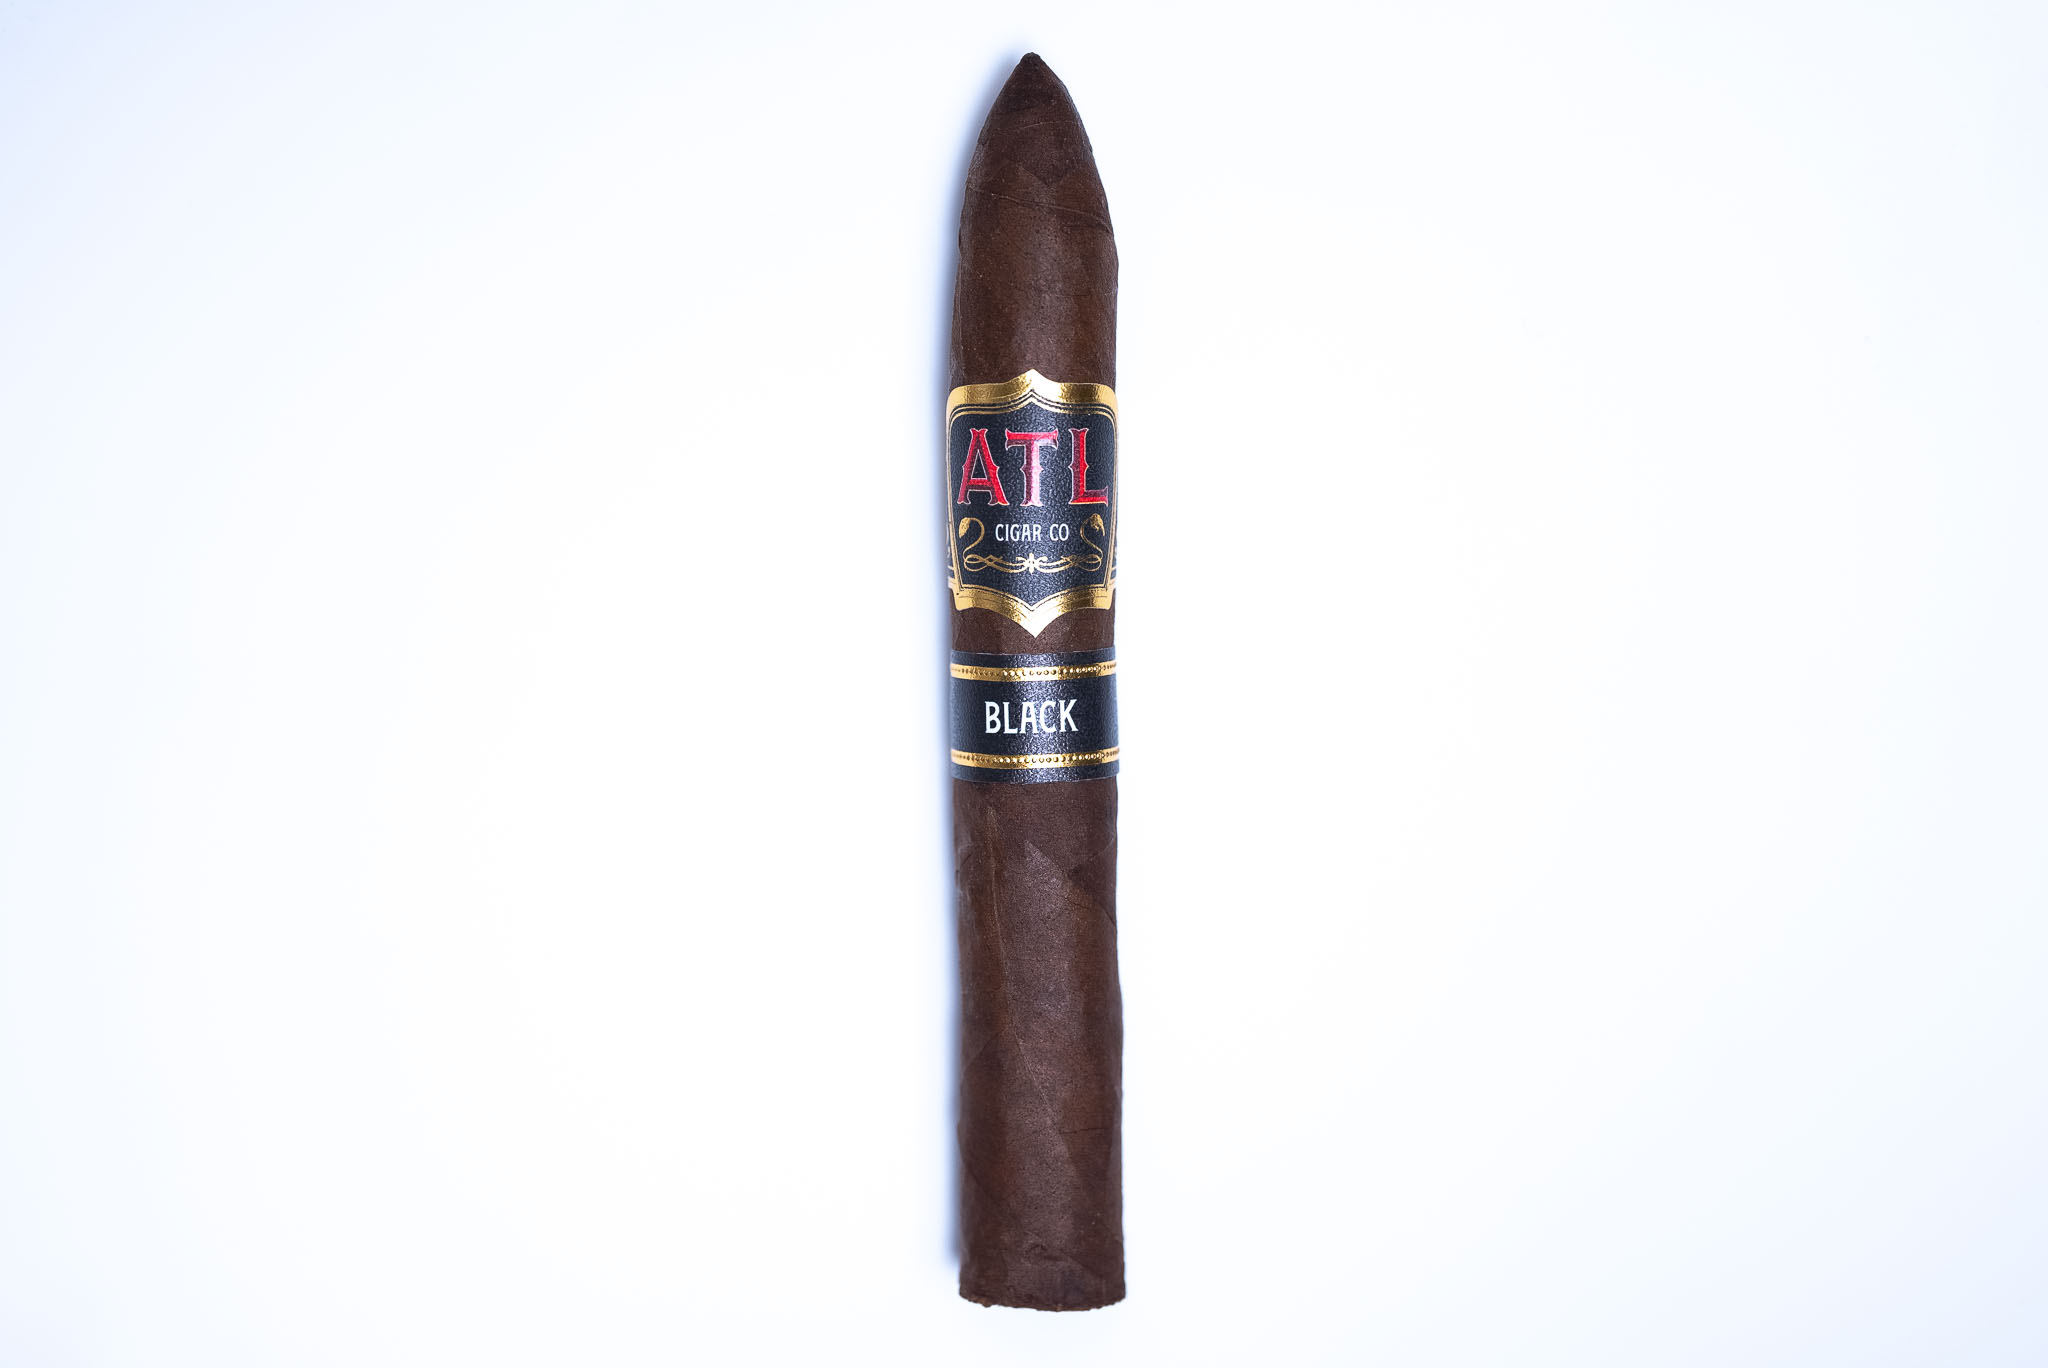 ATL Black Cigar